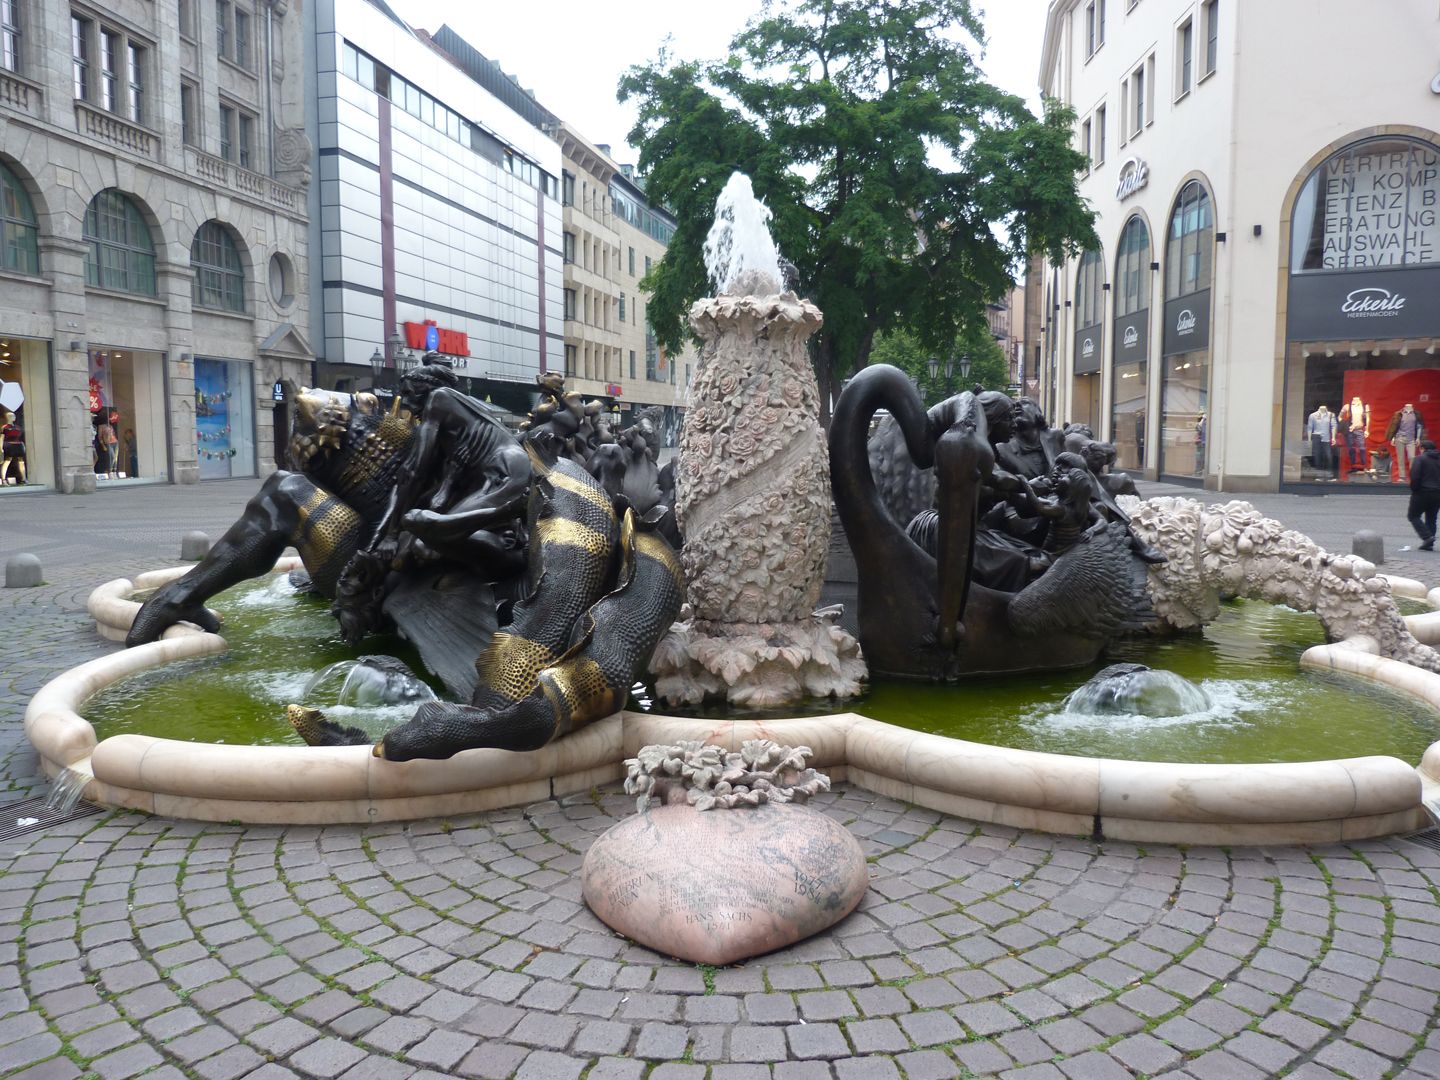 Ehekarussell / Hans-Sachs-Brunnen Ansicht vom "Weißen Turm", links "Höllendrachen", vorne in der Mitte das Marmorherz mit dem Gedicht, rechts der "Pelikanwagen"